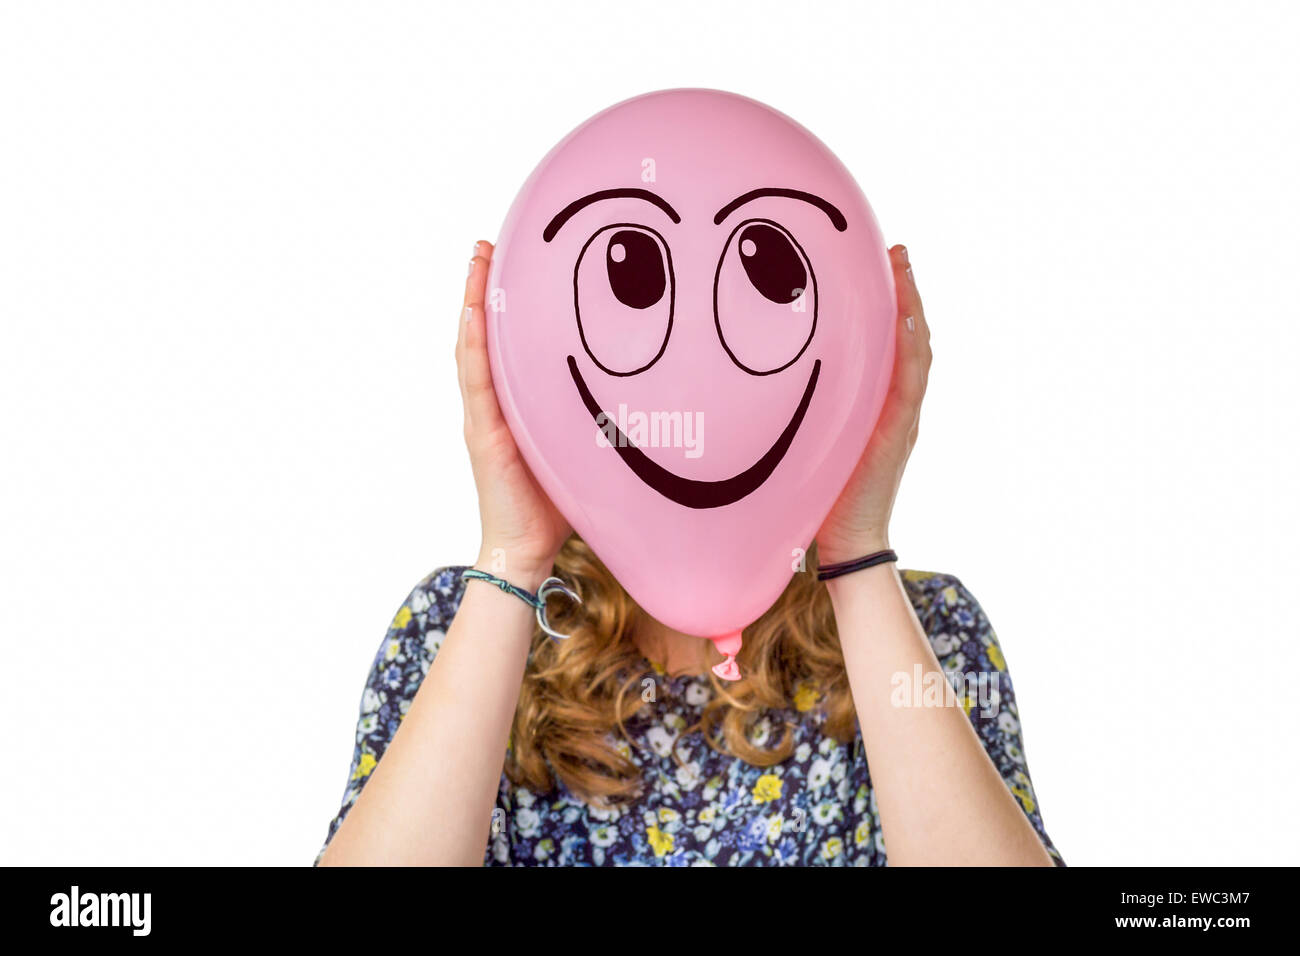 Ragazza con palloncino rosa con sorridente espressione facciale Foto Stock